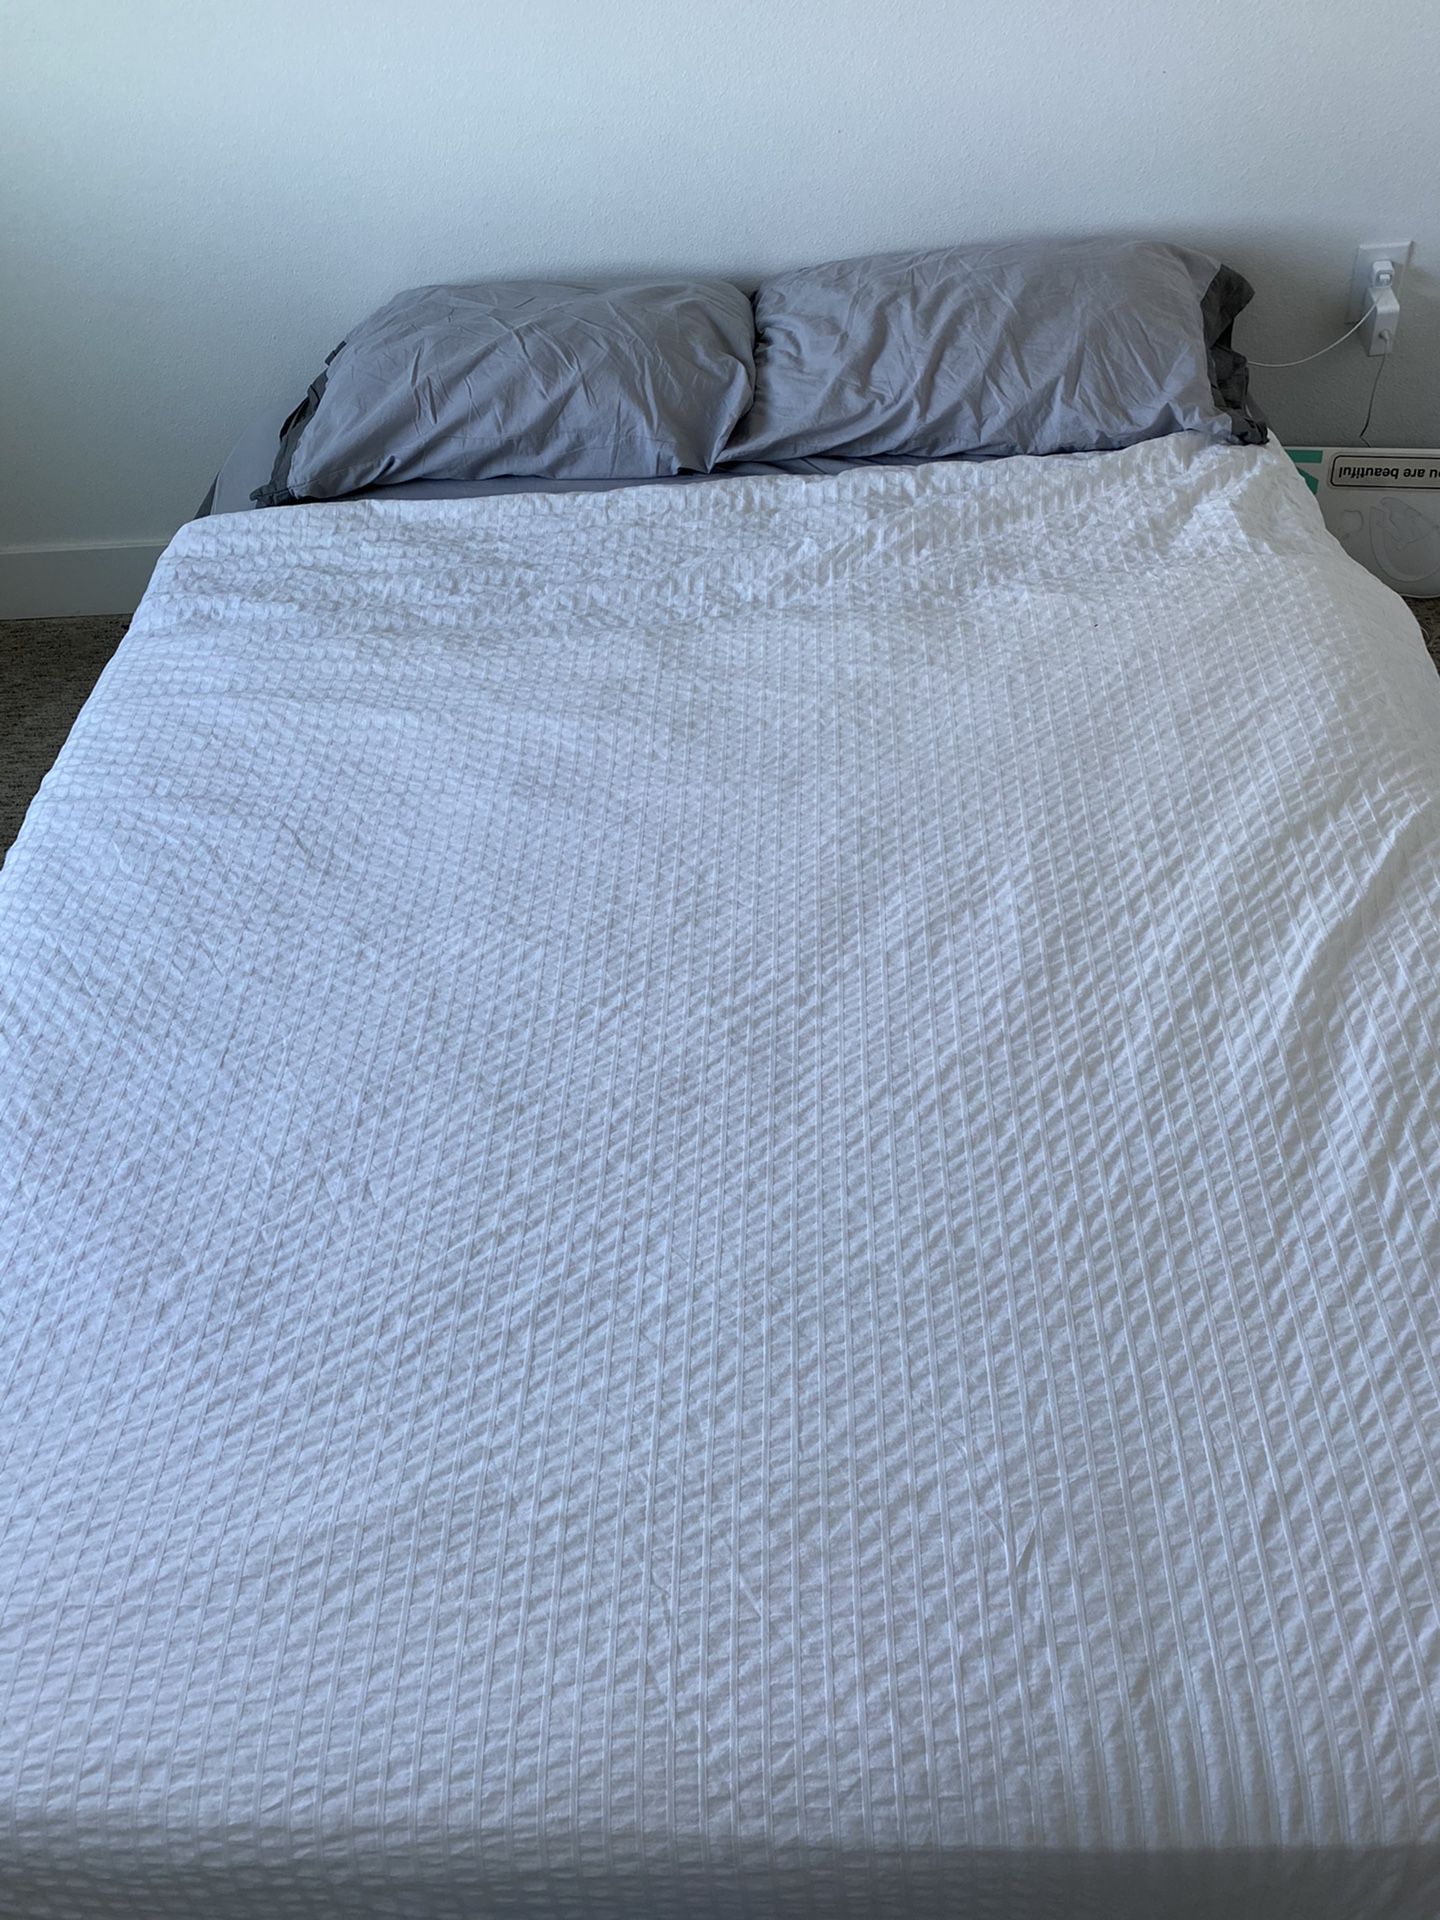 Free queen bed